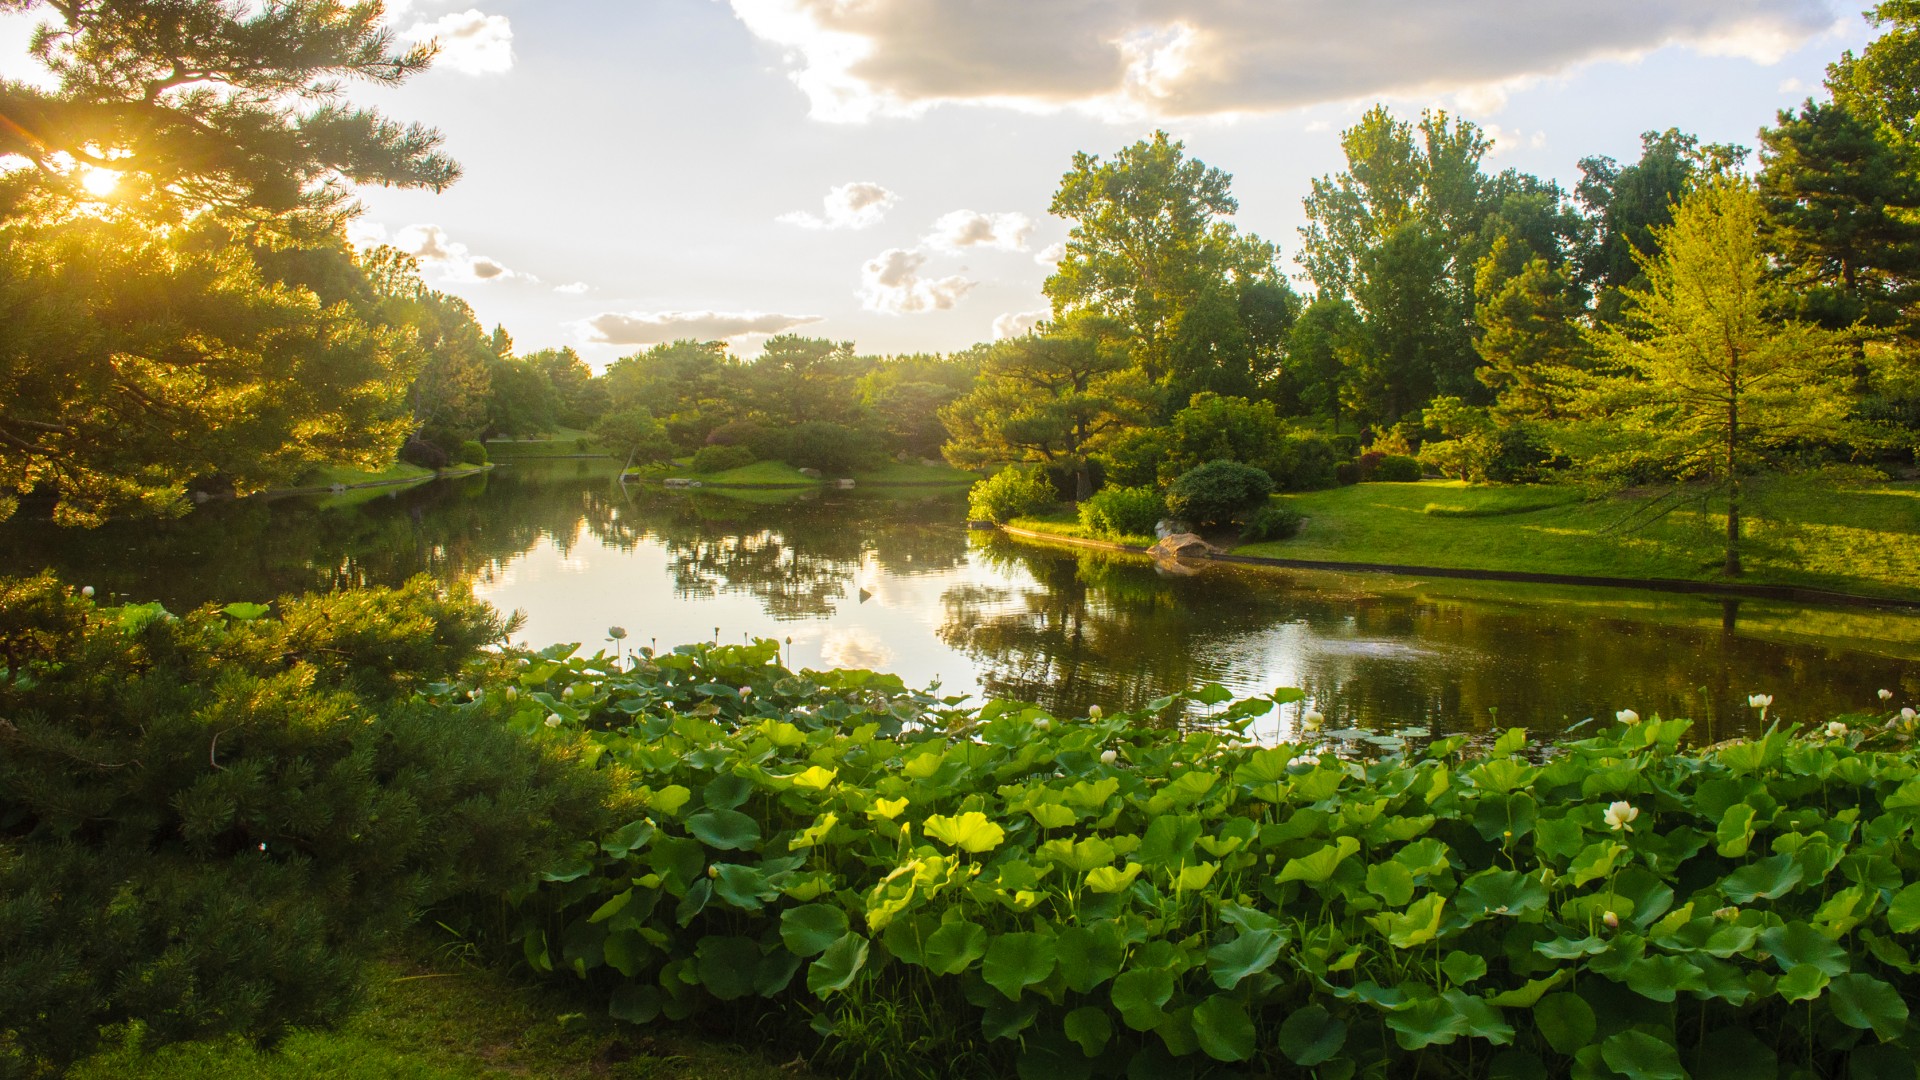 美国 密苏里植物园 公园 池塘 绿色自然风景壁纸 风景壁纸 壁纸下载 彼岸桌面